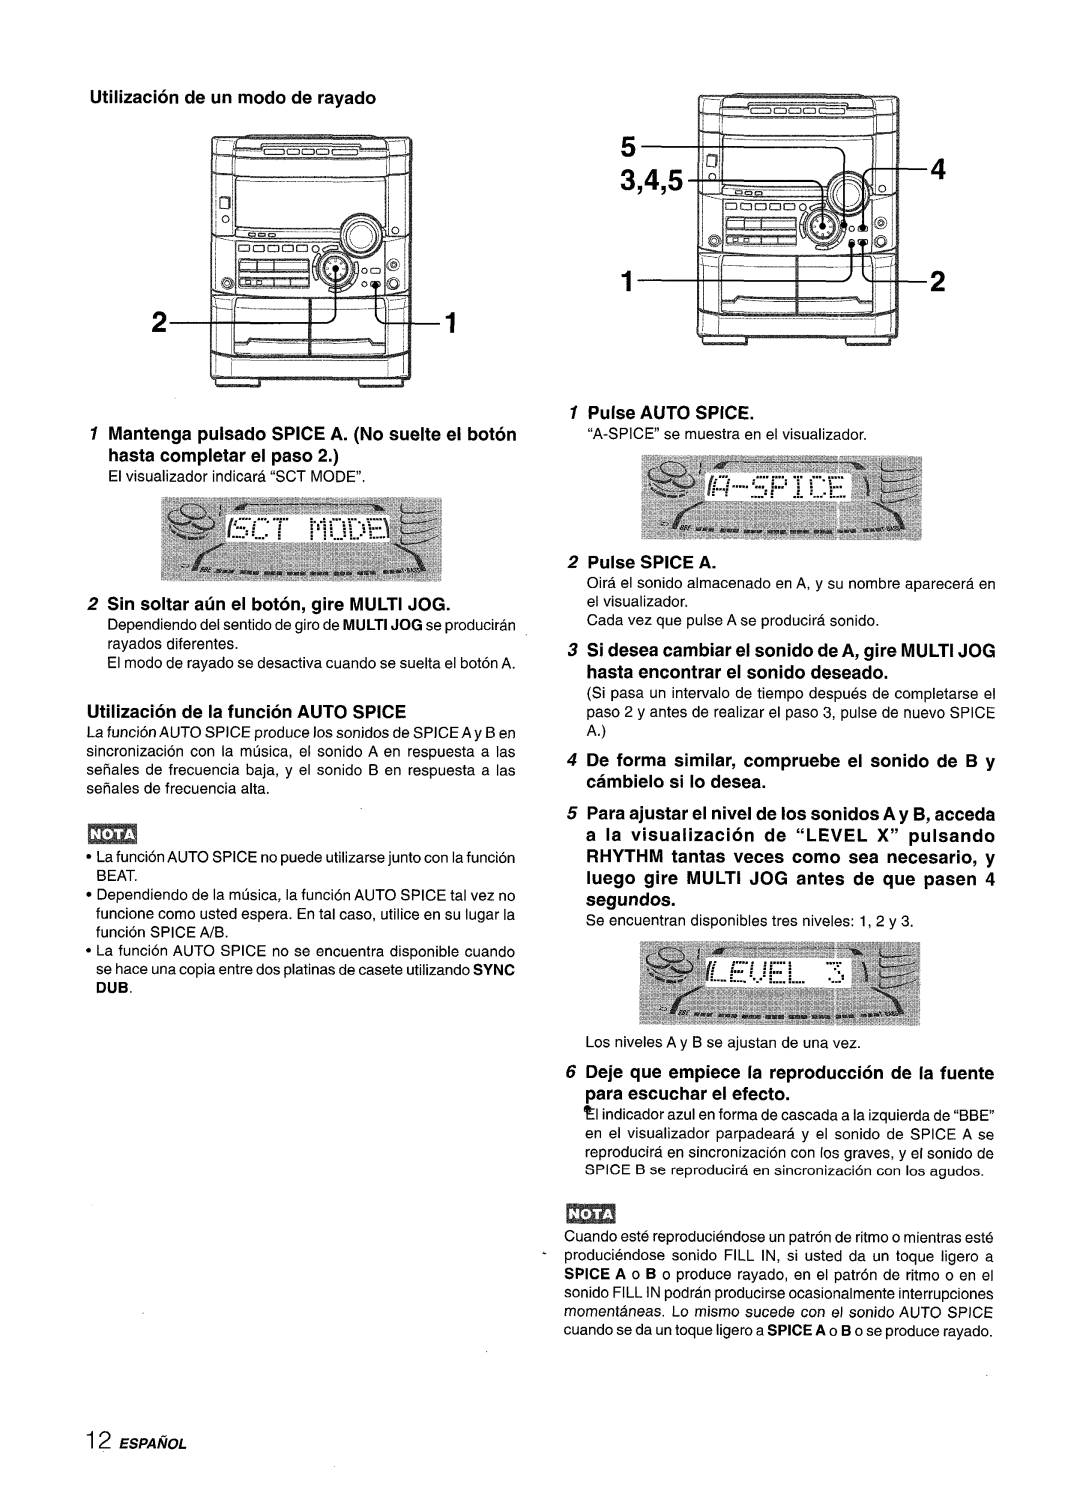 Sony NSX-A777 4,5 B, Utilization de un modo de rayado, Pulse AUTO, Spice, Mantenga, pulsado, SPICE A. No suelte e! boton 